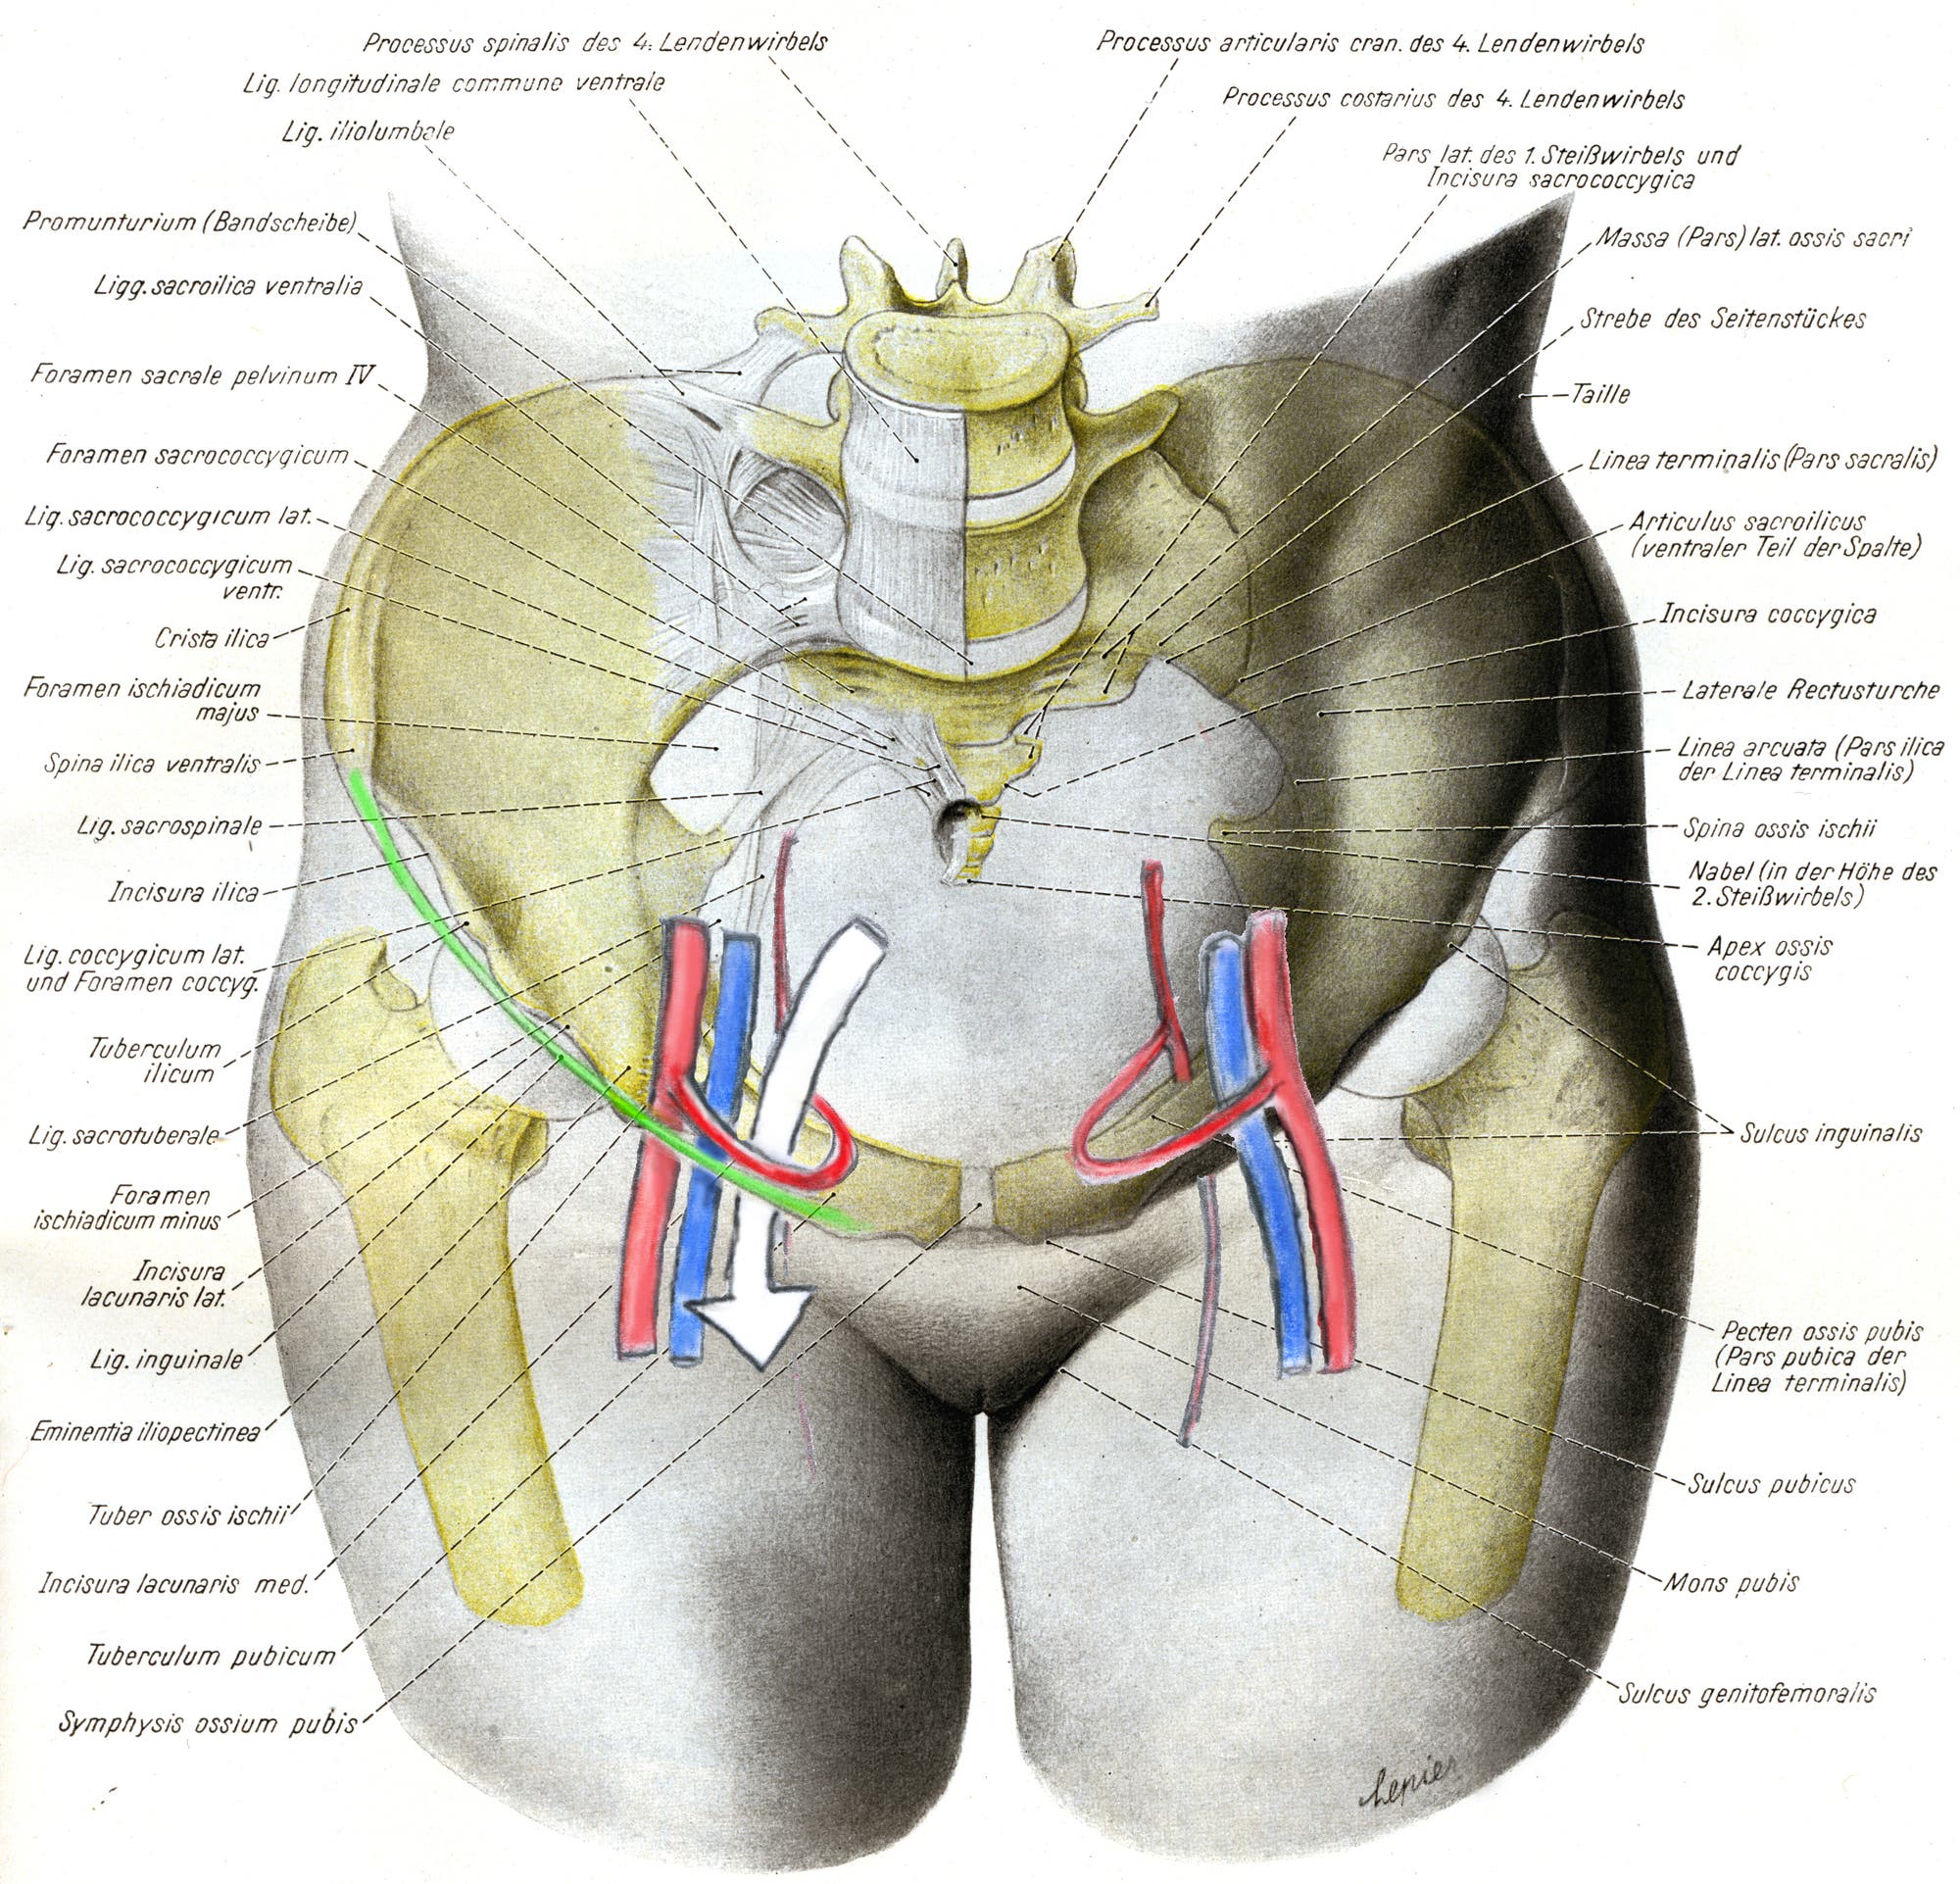 Anatomia coronae